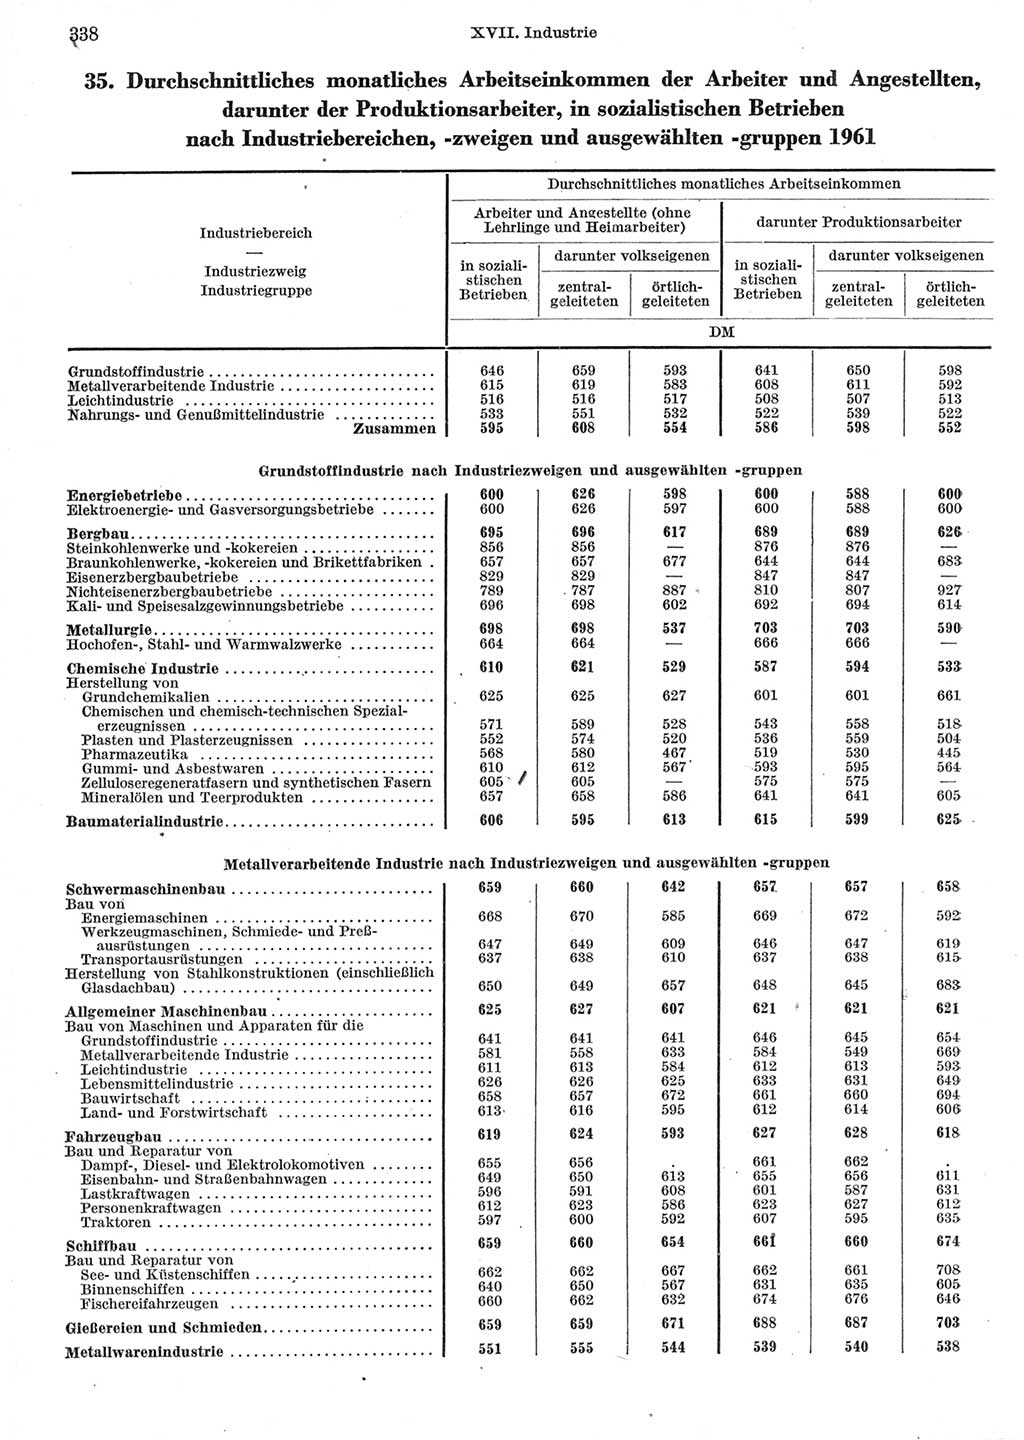 Statistisches Jahrbuch der Deutschen Demokratischen Republik (DDR) 1962, Seite 338 (Stat. Jb. DDR 1962, S. 338)